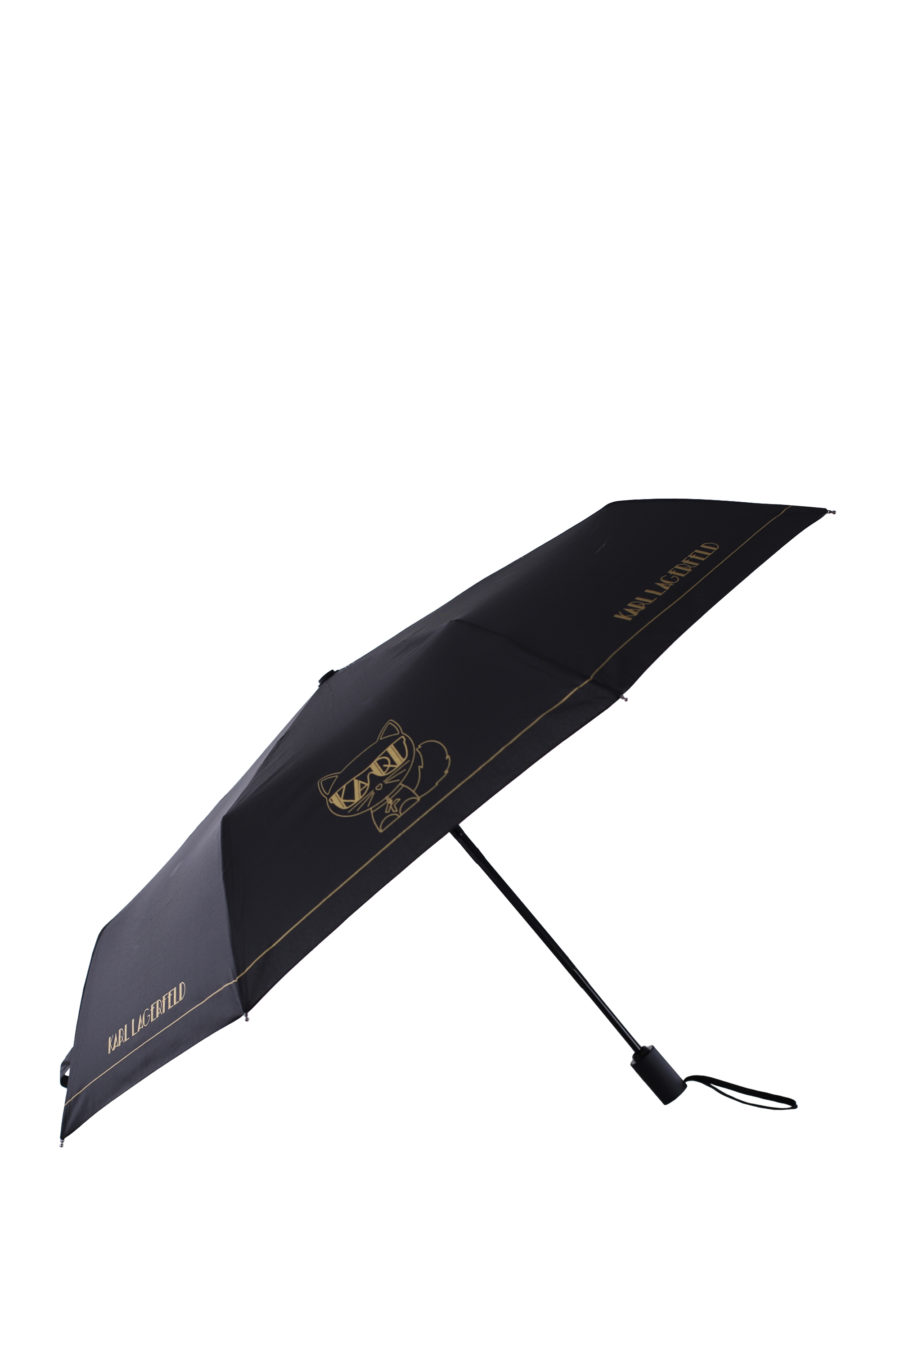 Paraguas color negro con logotipo "Karl" - IMG 0105